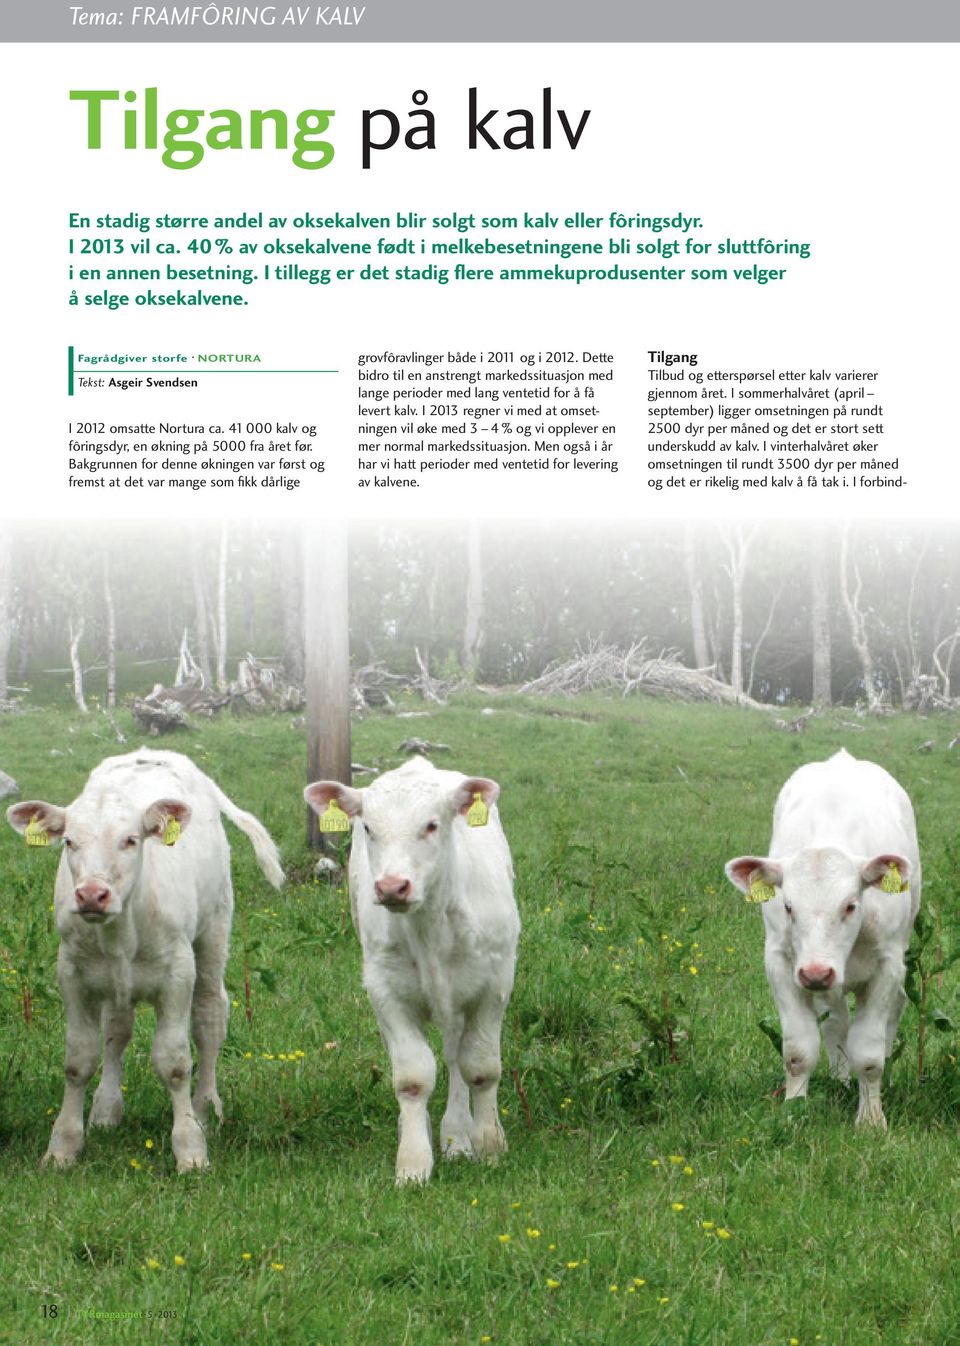 Fagrådgiver storfe NORTURA Tekst: Asgeir Svendsen I 2012 omsatte Nortura ca. 41 000 kalv og fôringsdyr, en økning på 5000 fra året før.